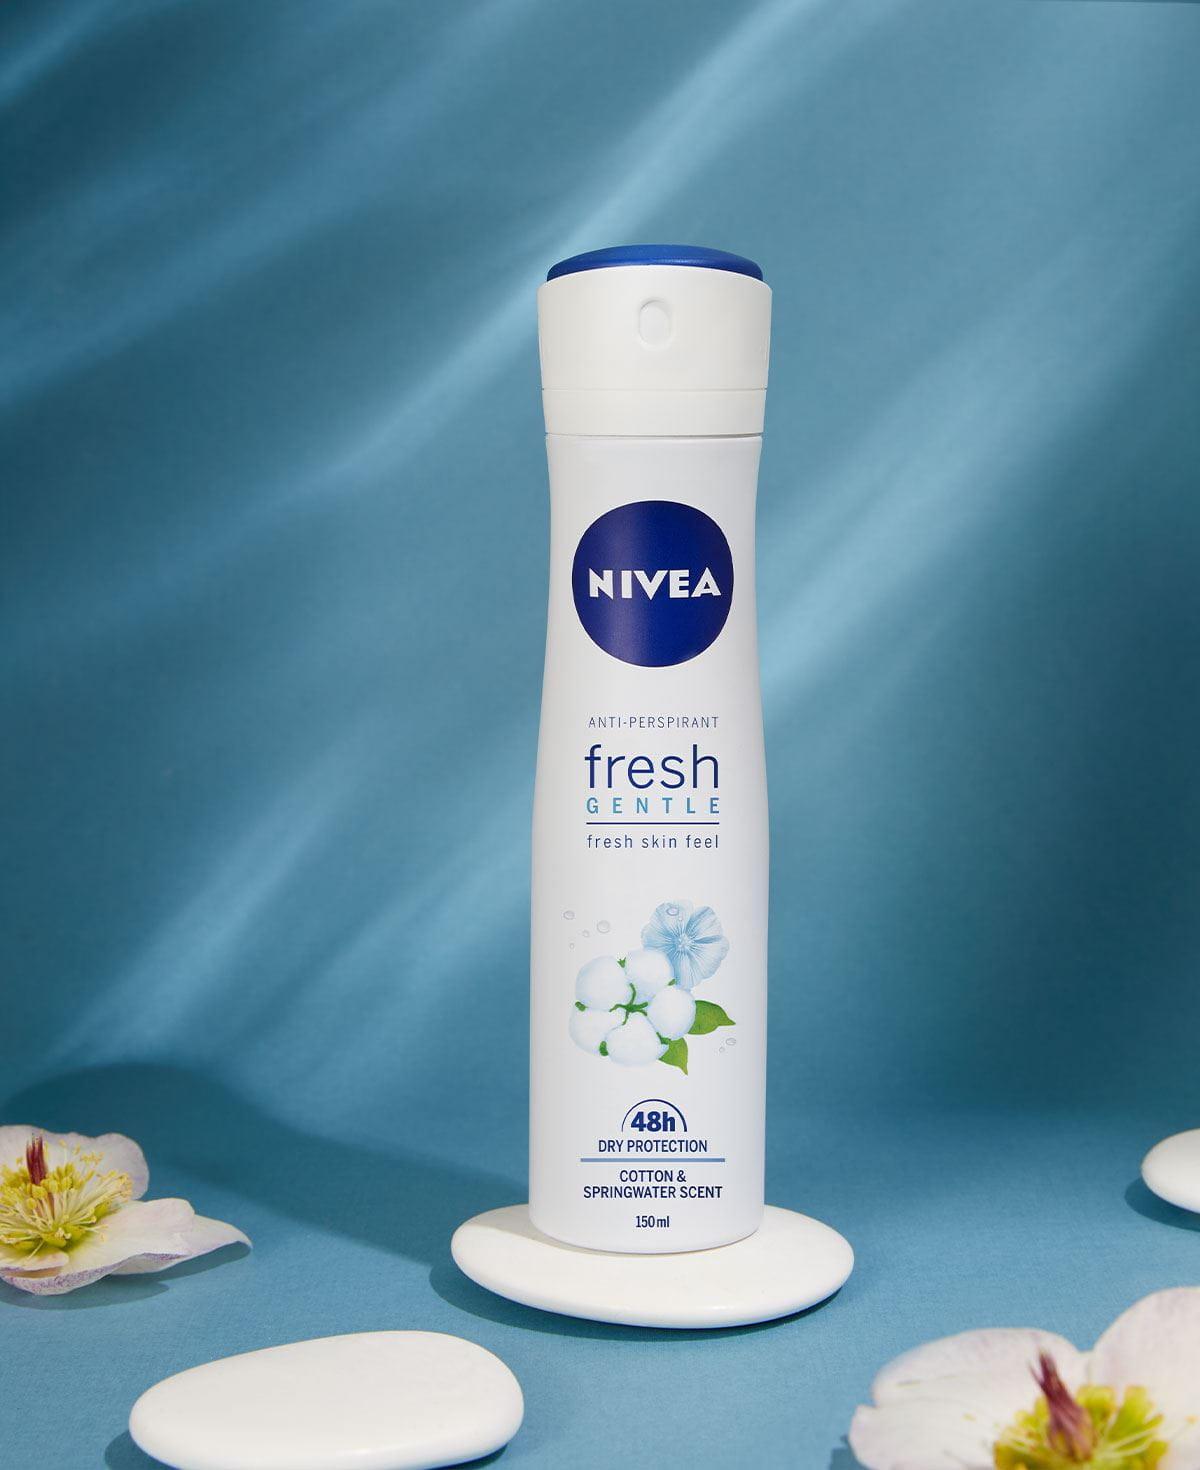 NIVEA Fresh Gentle dezodorans na plavoj podlazi okružen cvijećem.